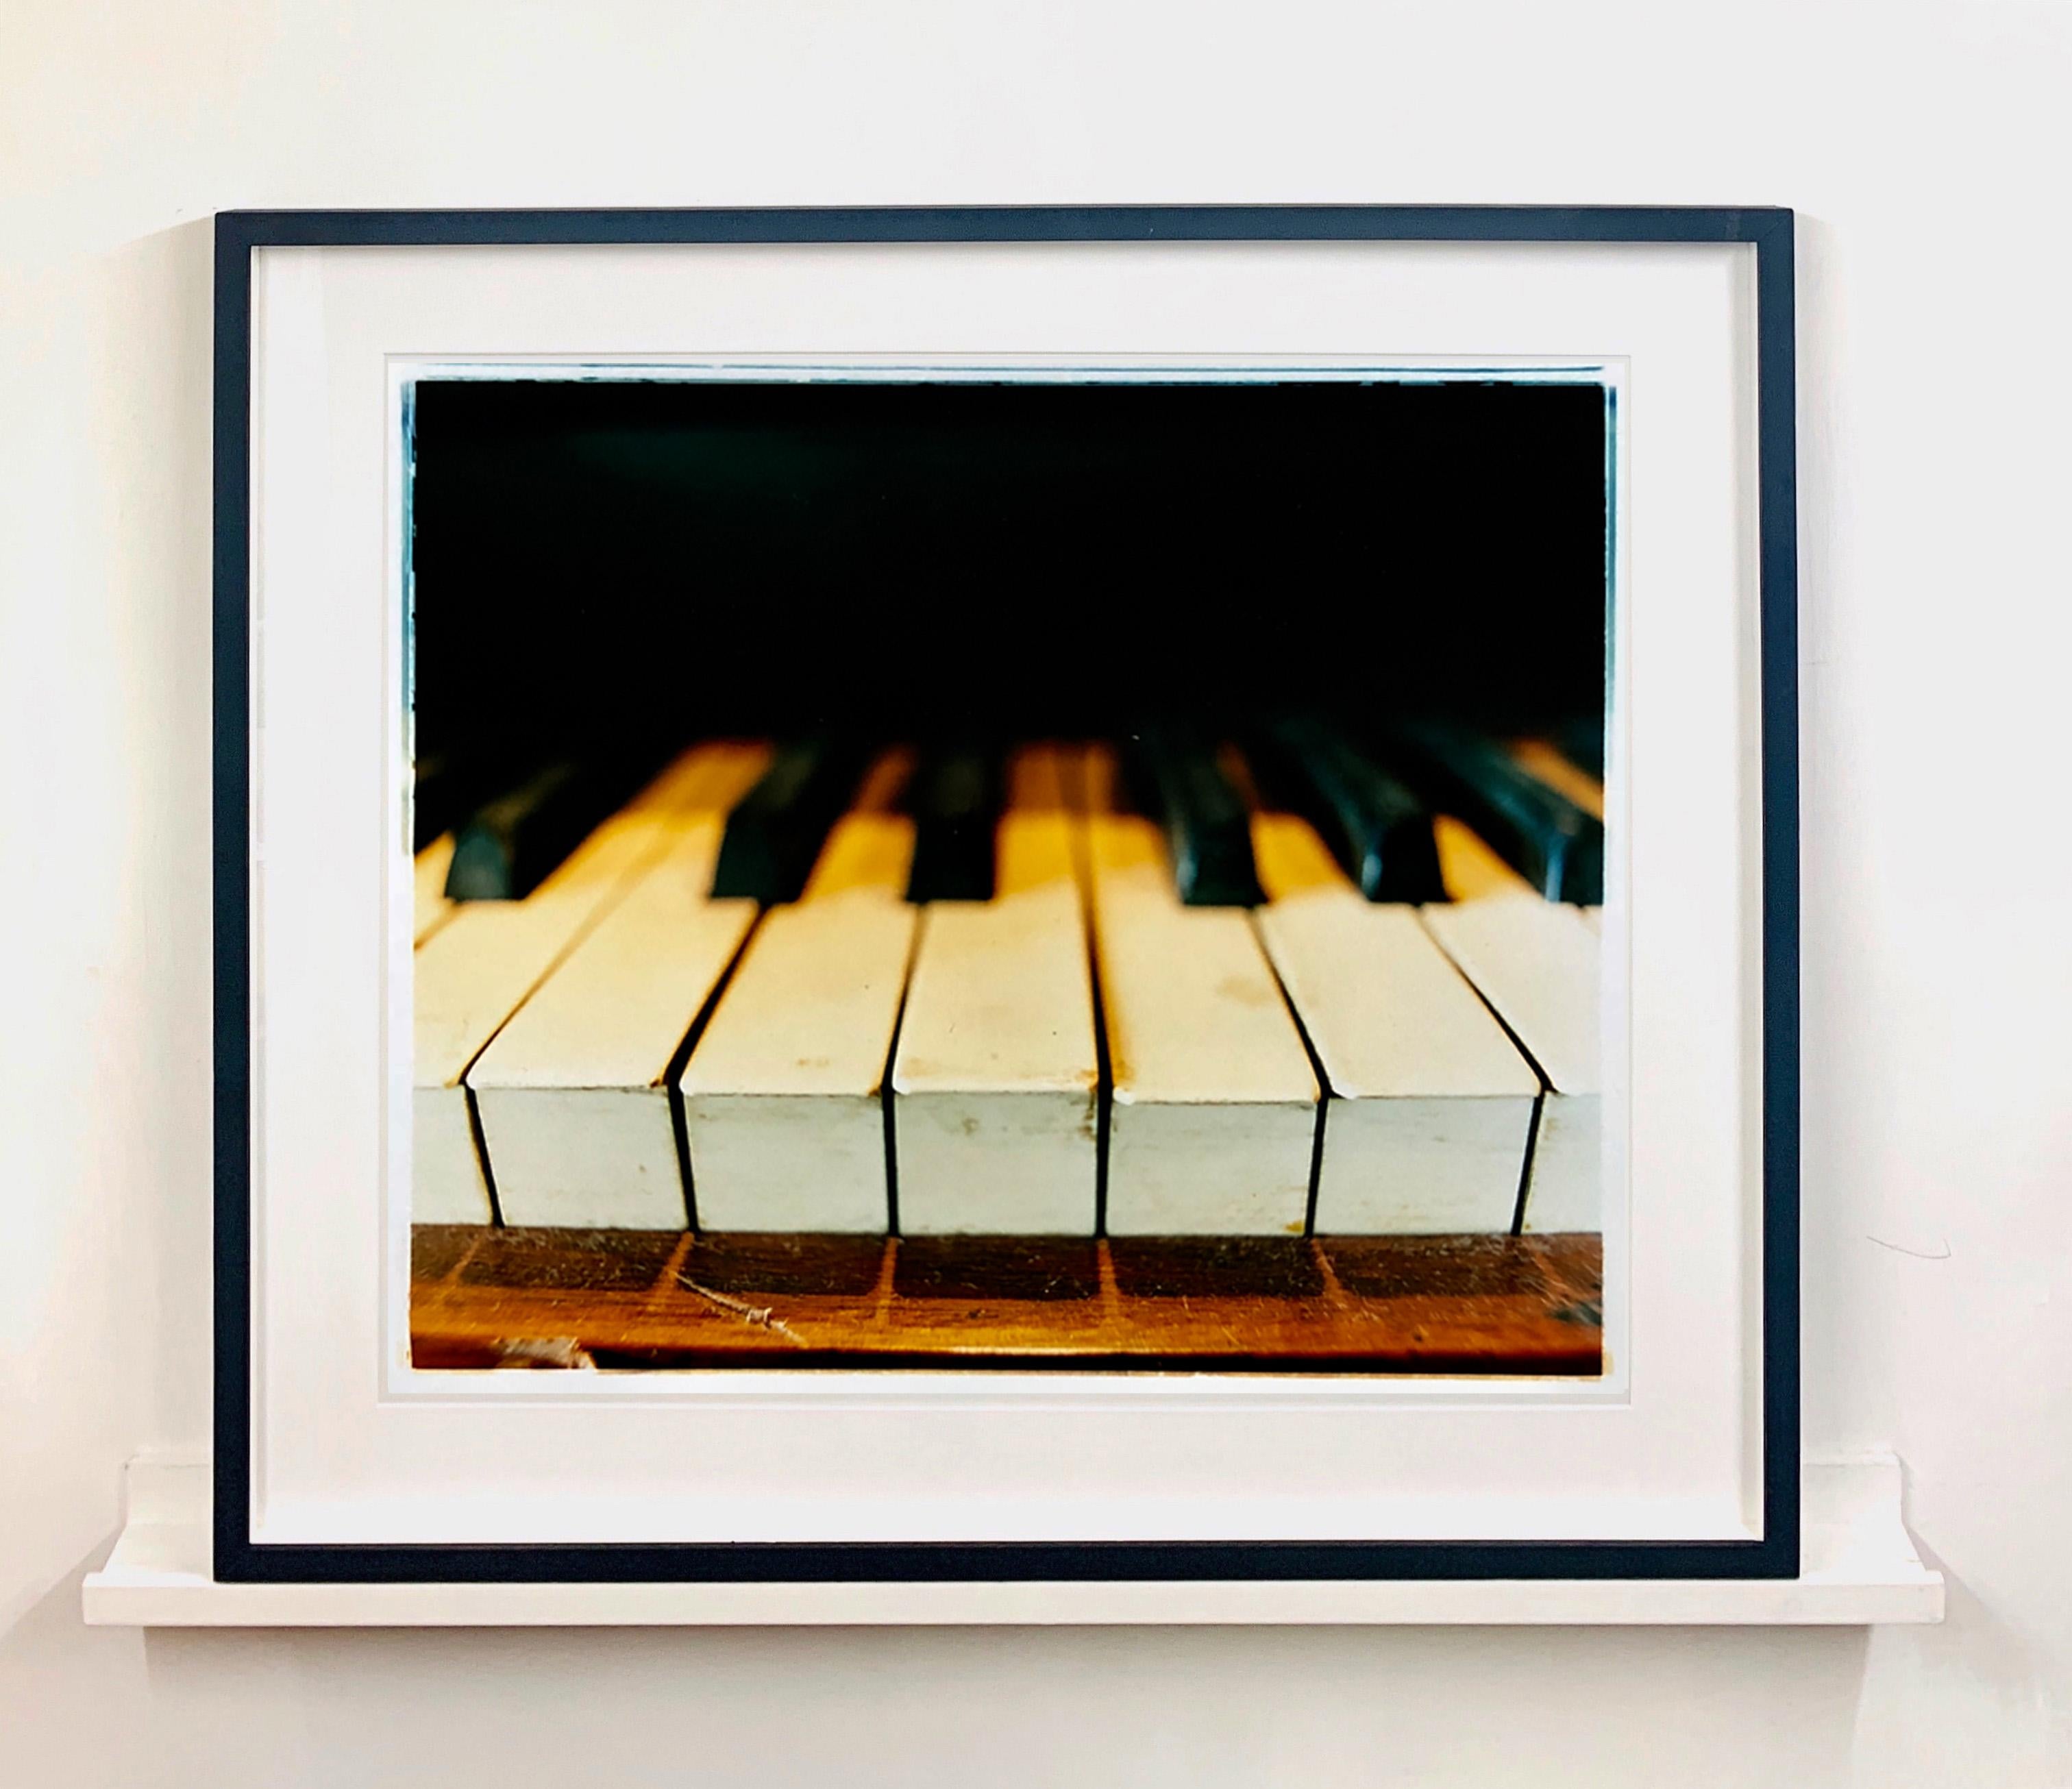 Klavierschlüssel, Stockton-on-Tees - Musikfarbenfotografie (Schwarz), Interior Print, von Richard Heeps